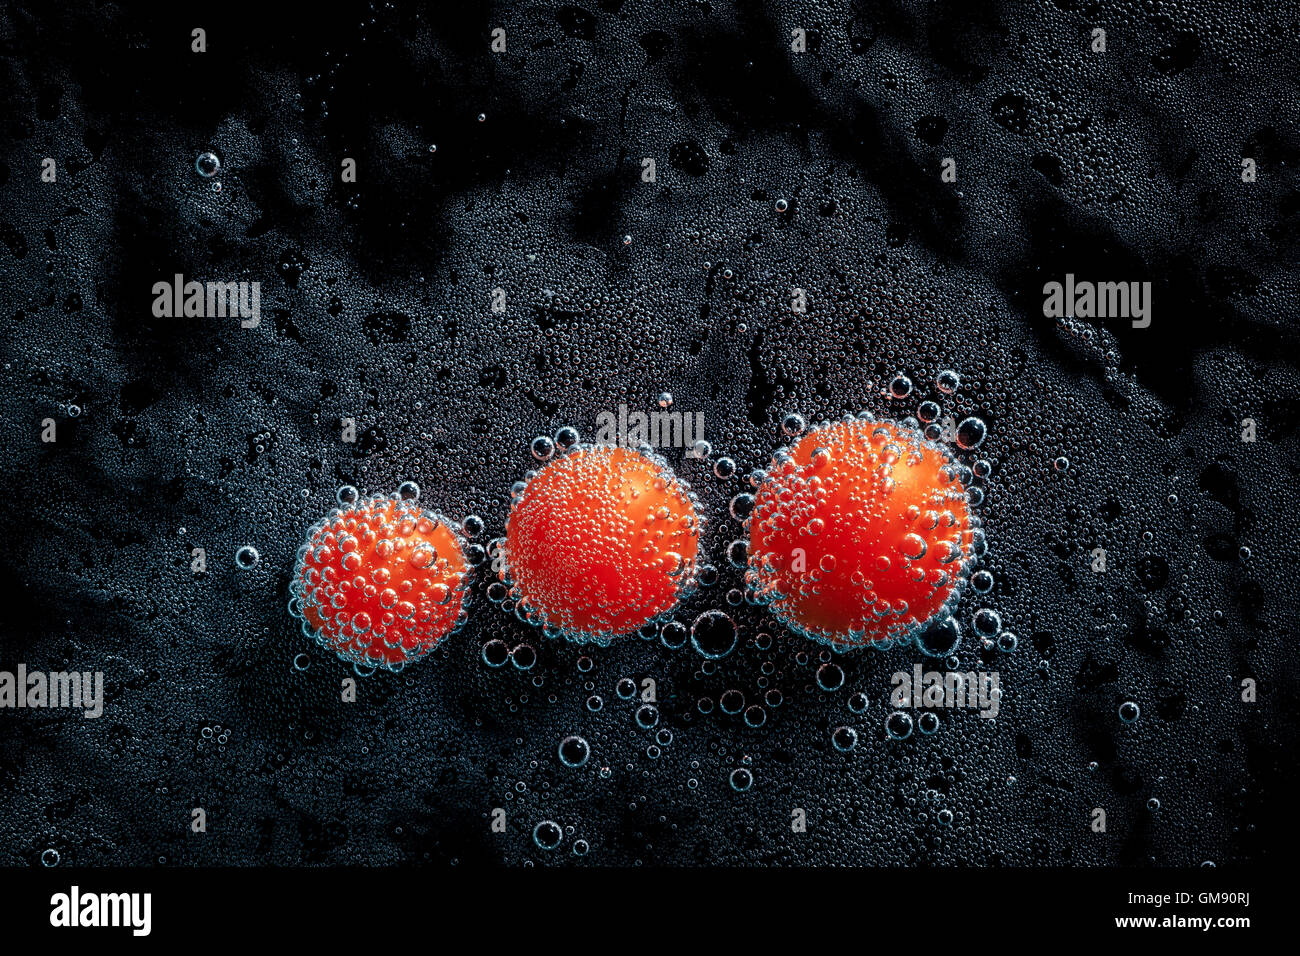 Tomates cerises dans de l'eau minérale, une série de photos. Close-up de l'eau gazéifiée sur fond noir, conceptuel Banque D'Images